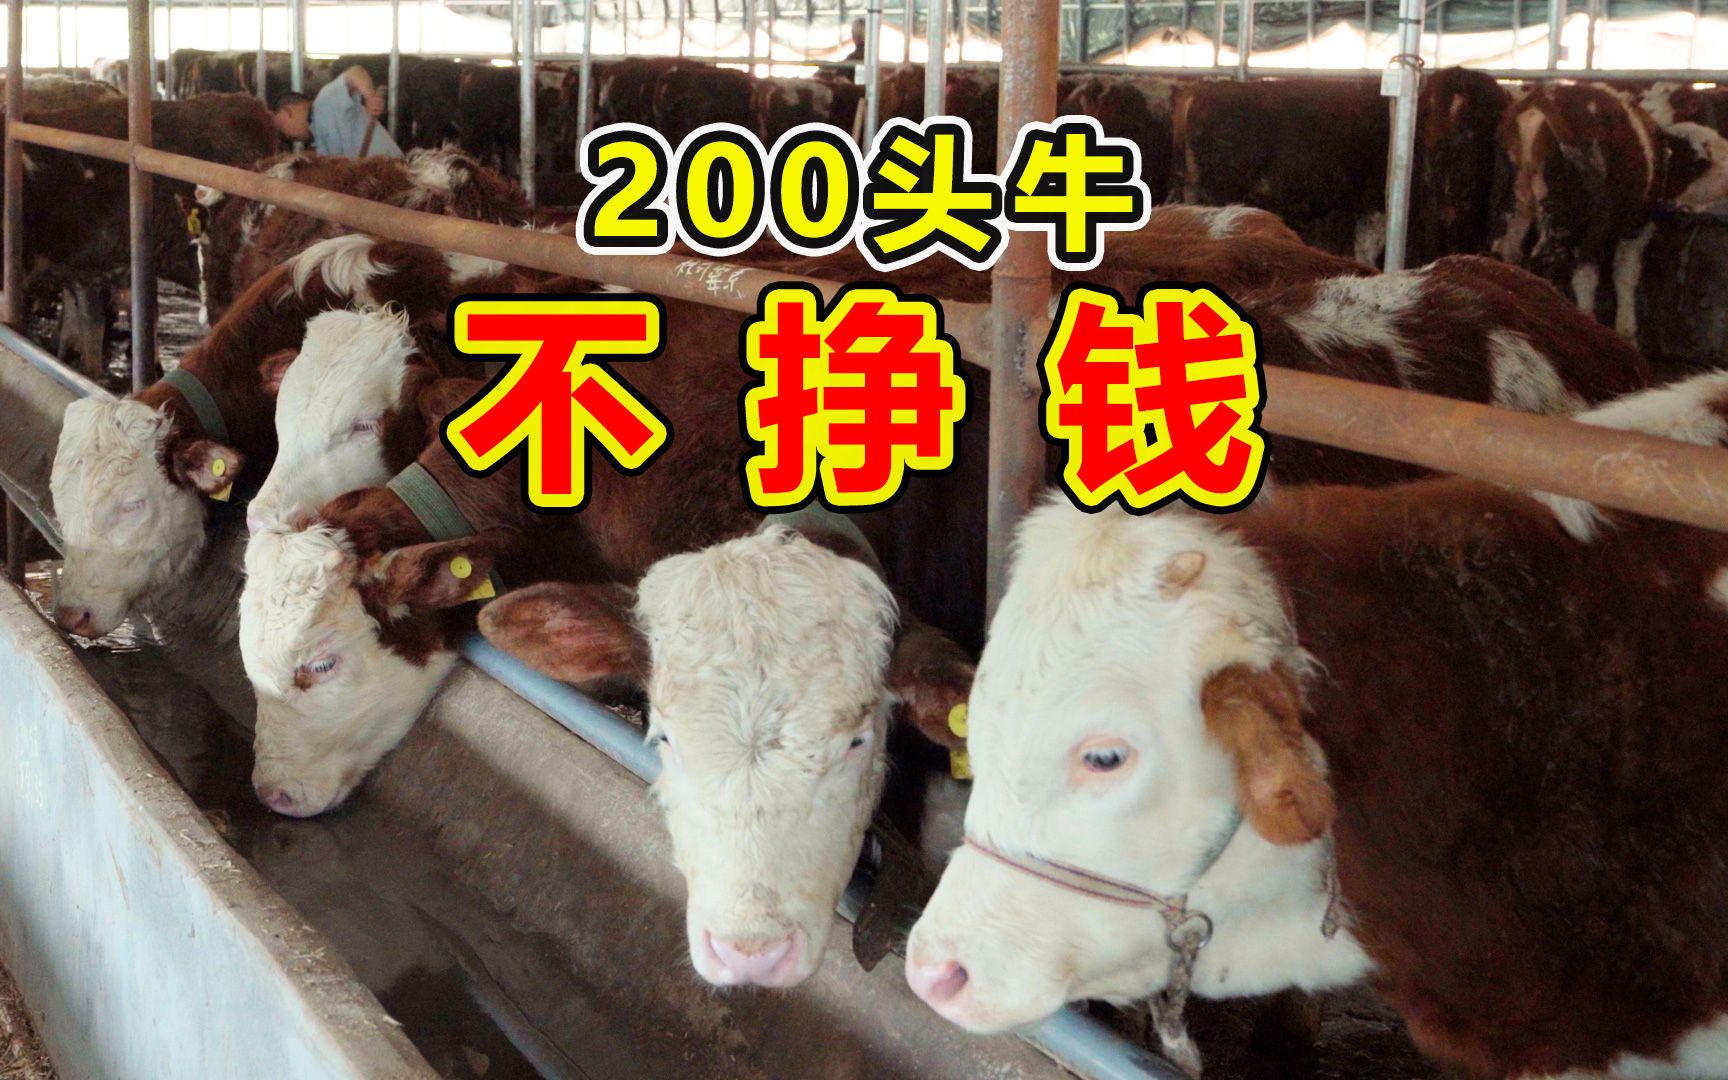 广州奶牛养殖场 奶牛犊 鲁西黄牛荷斯坦高产奶牛养殖场-阿里巴巴